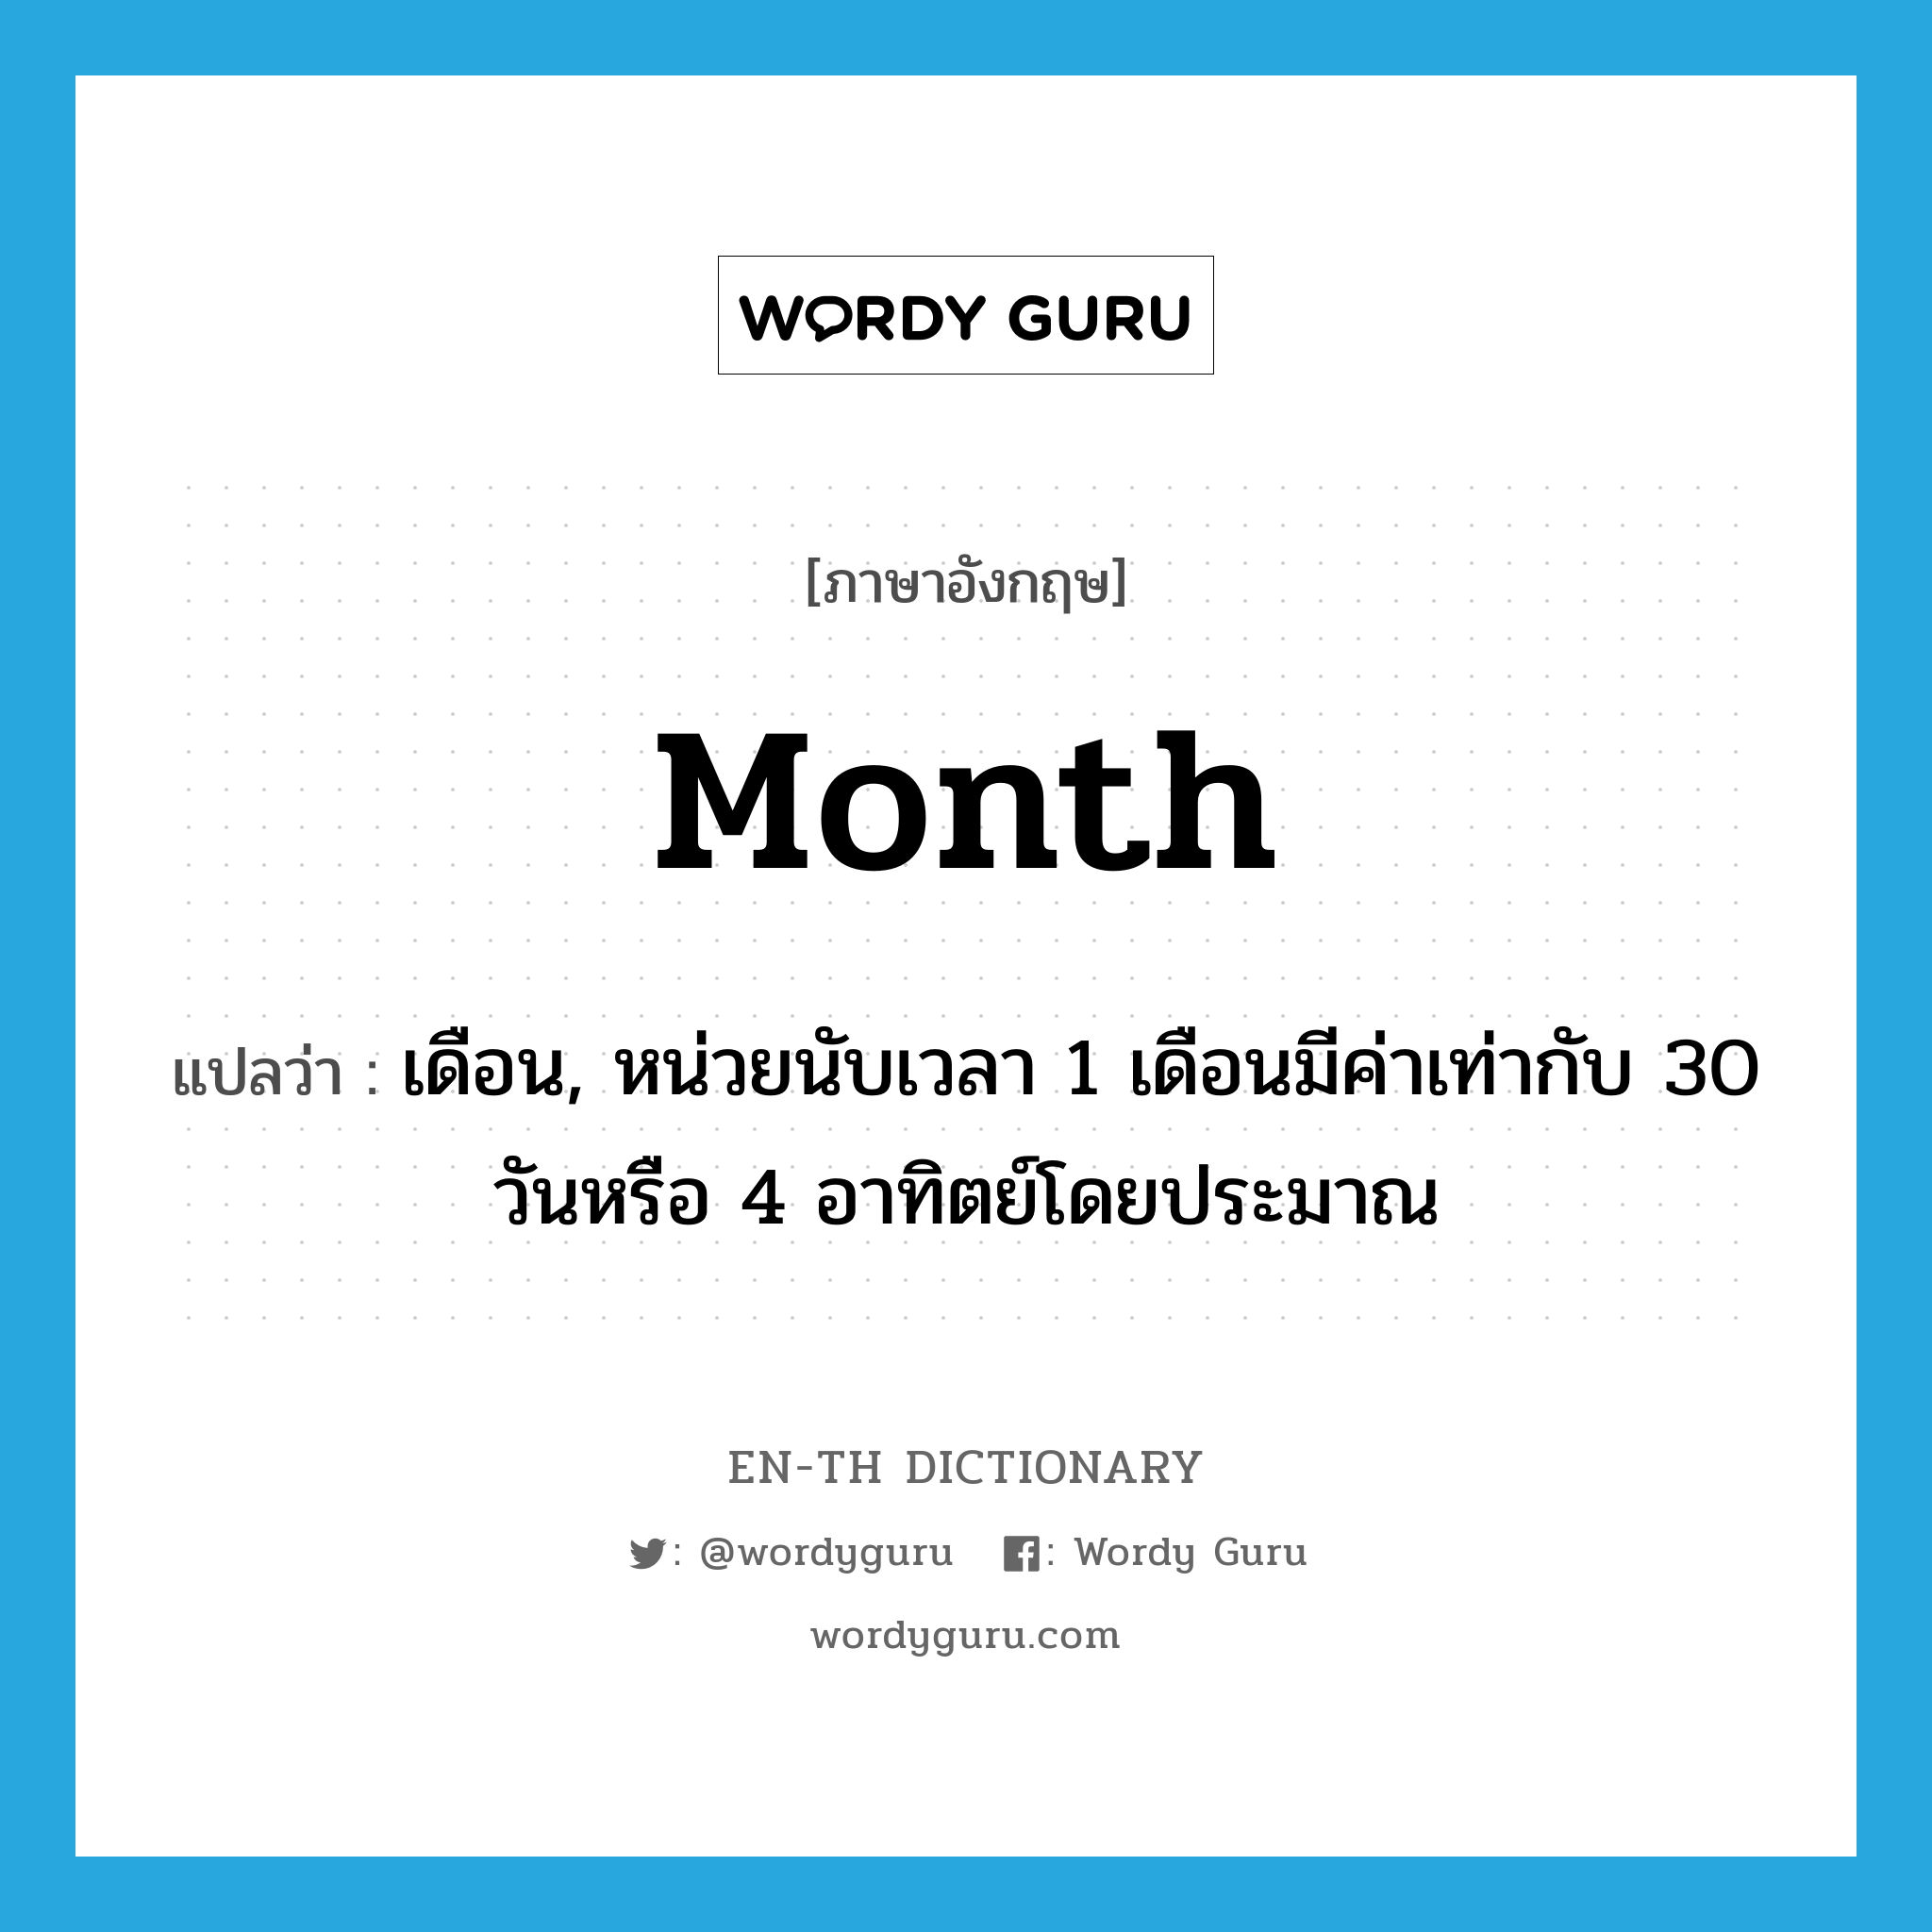 เดือน, หน่วยนับเวลา 1 เดือนมีค่าเท่ากับ 30 วันหรือ 4 อาทิตย์โดยประมาณ ภาษาอังกฤษ?, คำศัพท์ภาษาอังกฤษ เดือน, หน่วยนับเวลา 1 เดือนมีค่าเท่ากับ 30 วันหรือ 4 อาทิตย์โดยประมาณ แปลว่า month ประเภท N หมวด N